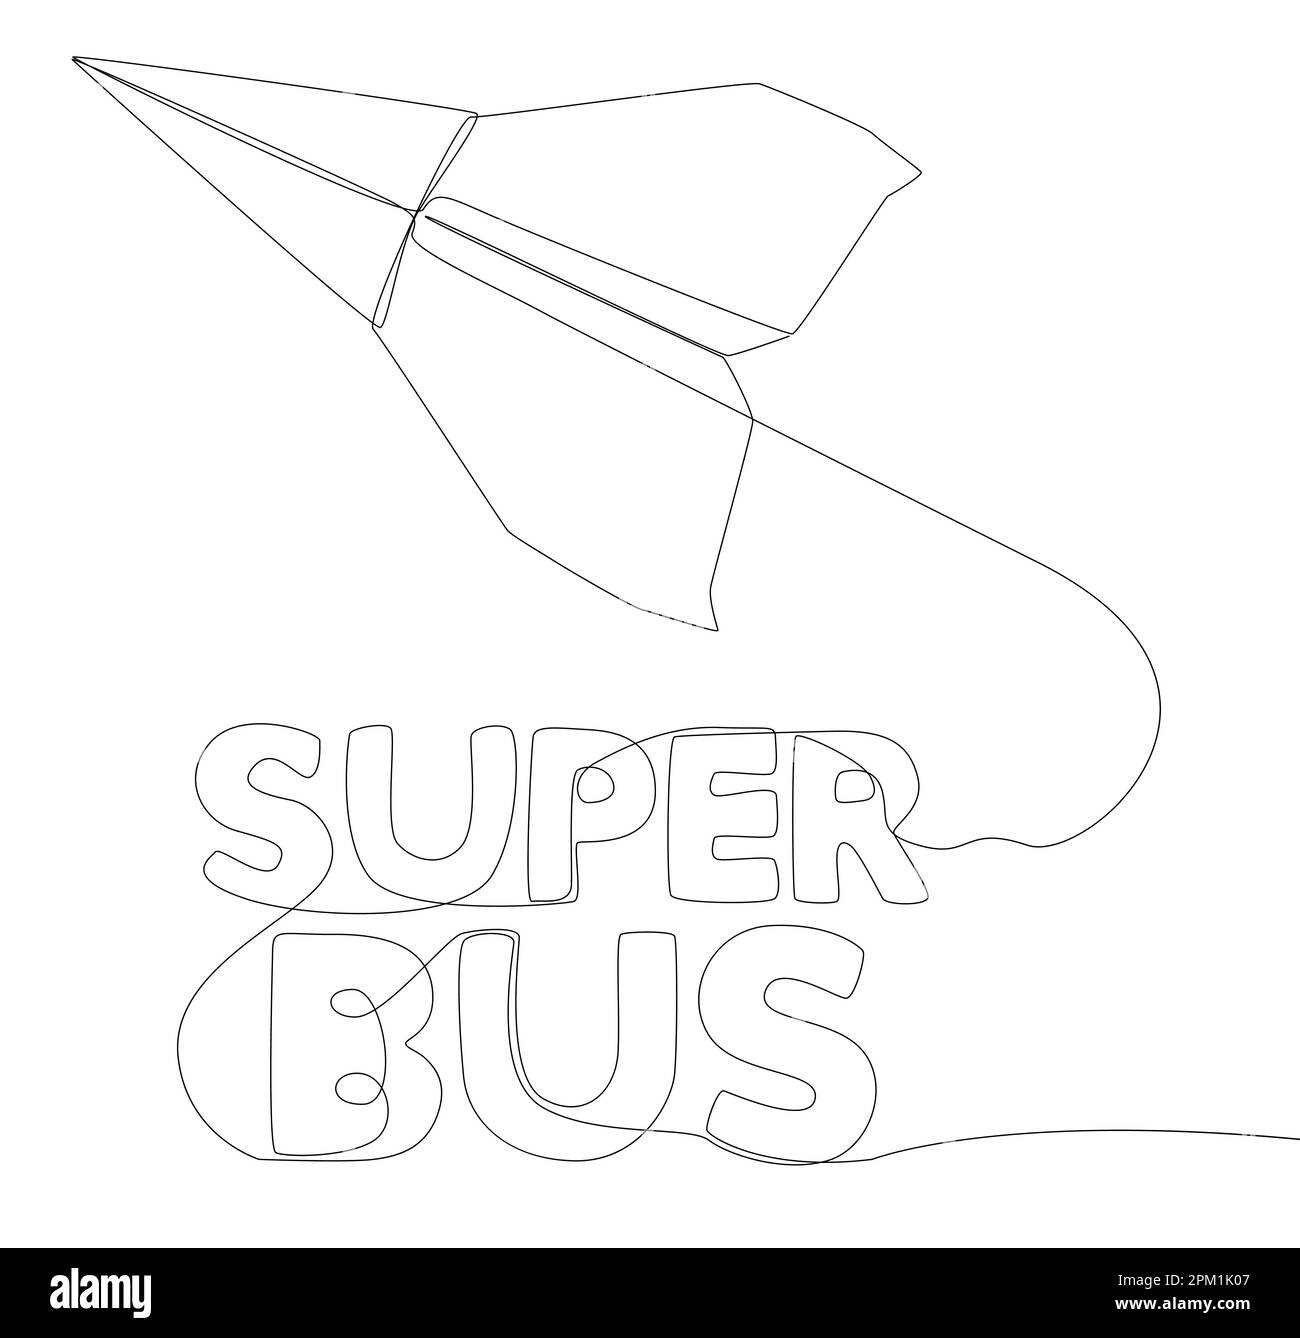 Eine durchgehende Zeile Papier-Flugzeug mit Super-Bus-Text. Vektorkonzept zur Darstellung dünner Linien. Kontur Zeichnen kreativer Ideen. Stock Vektor